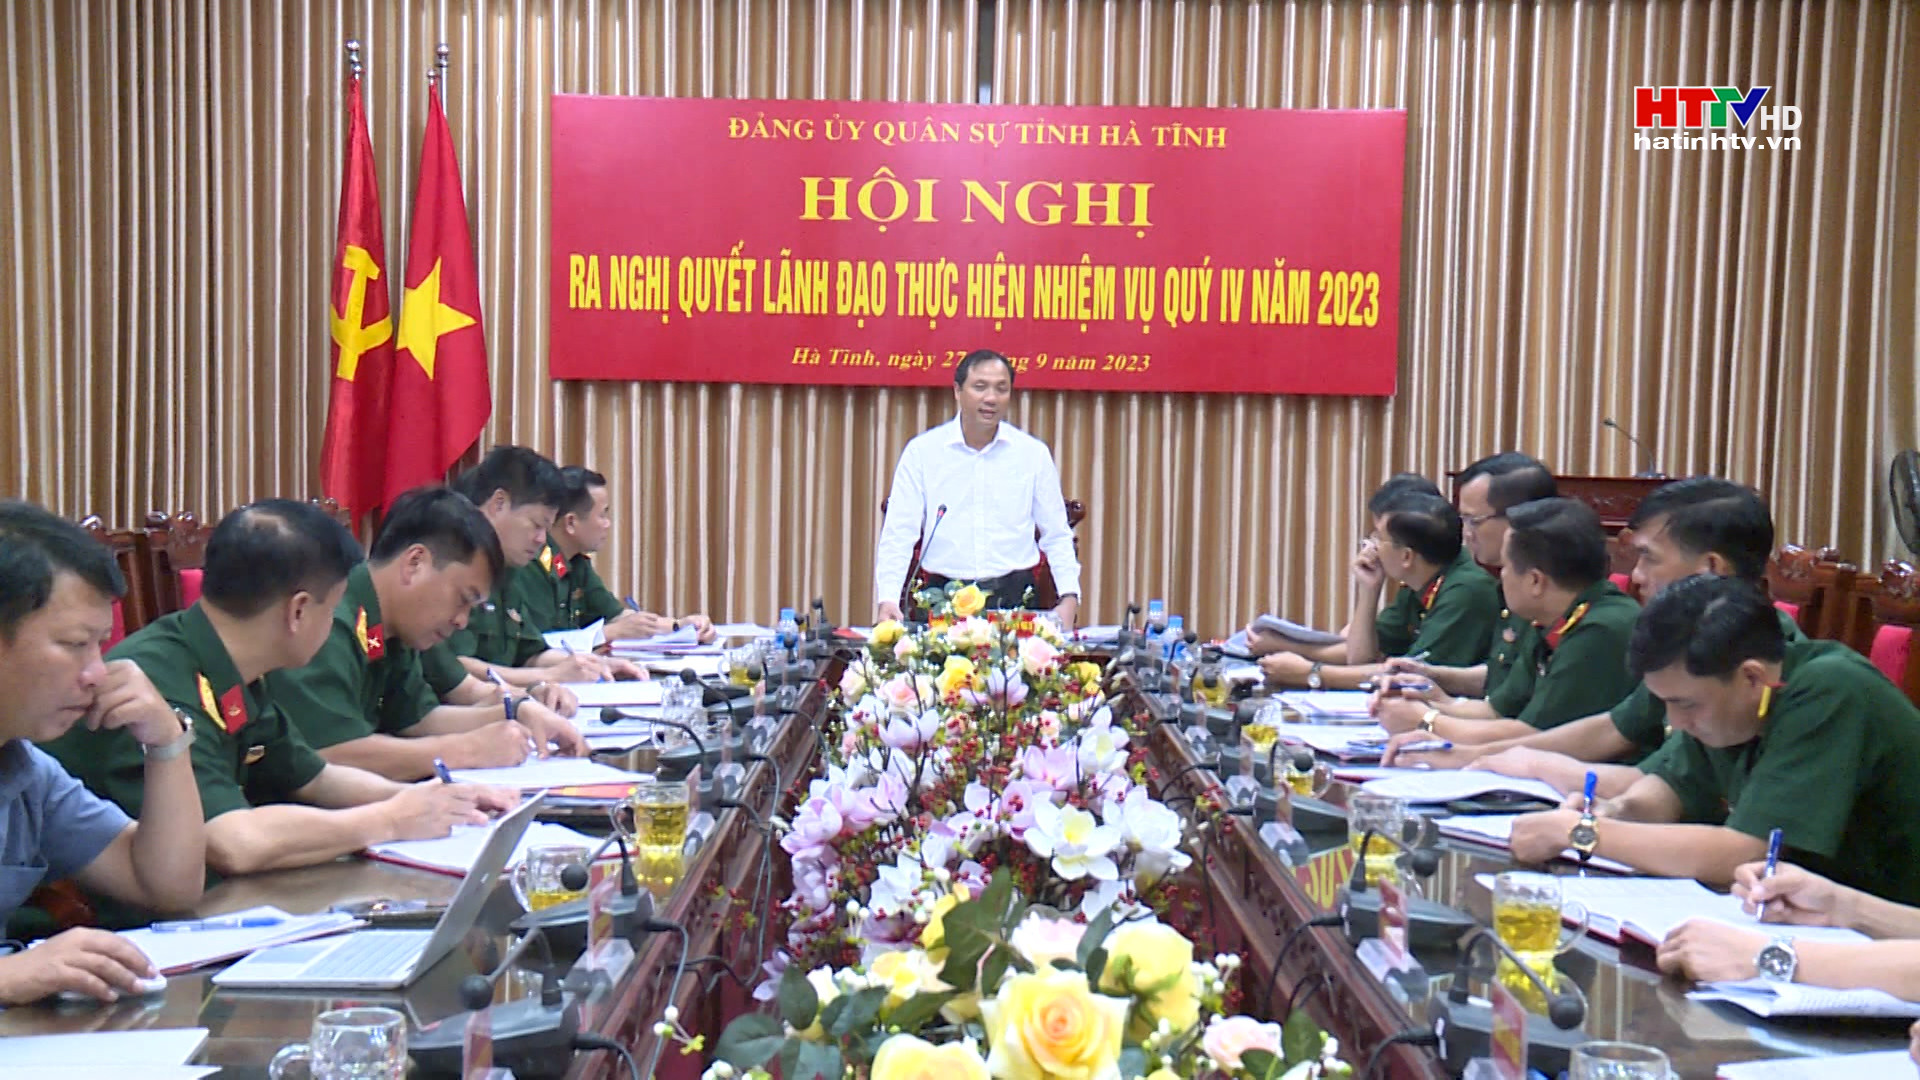 Đảng ủy Quân sự tỉnh họp ban hành Nghị quyết